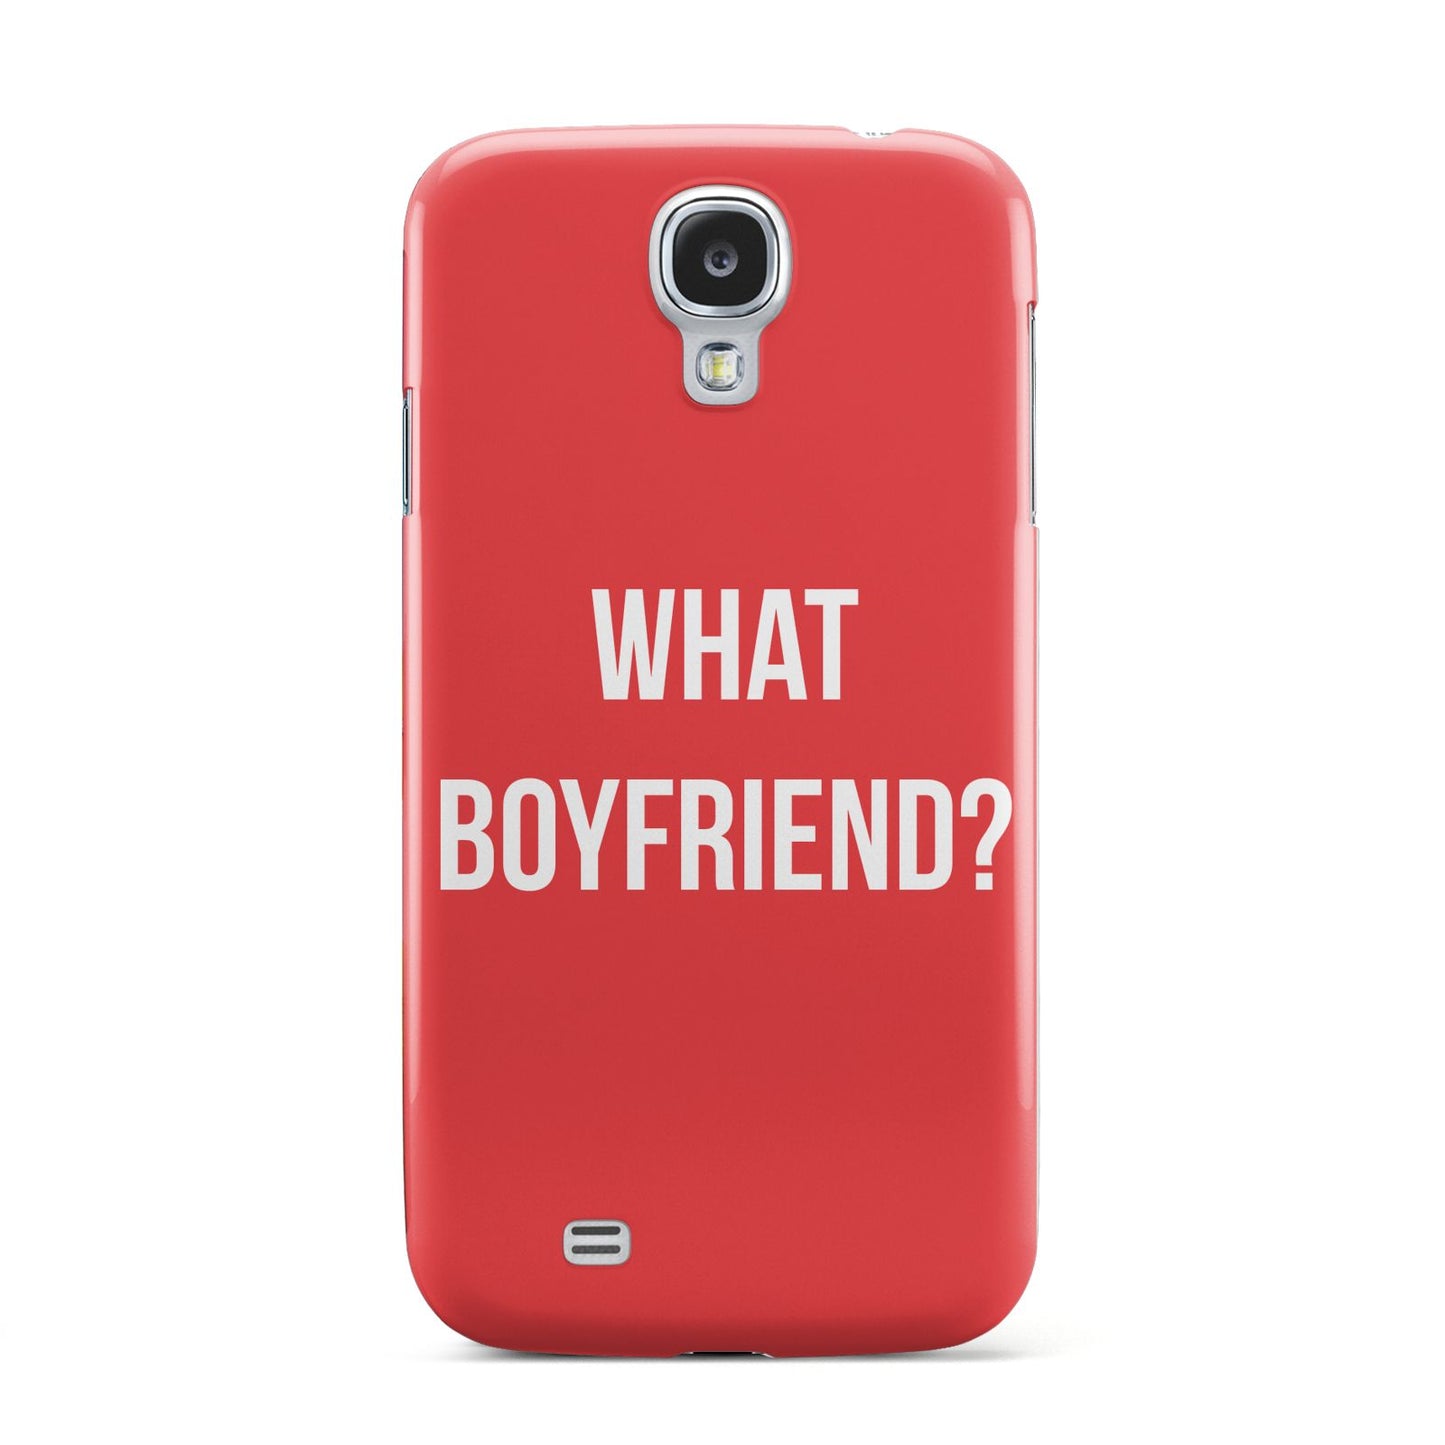 What Boyfriend Samsung Galaxy S4 Case